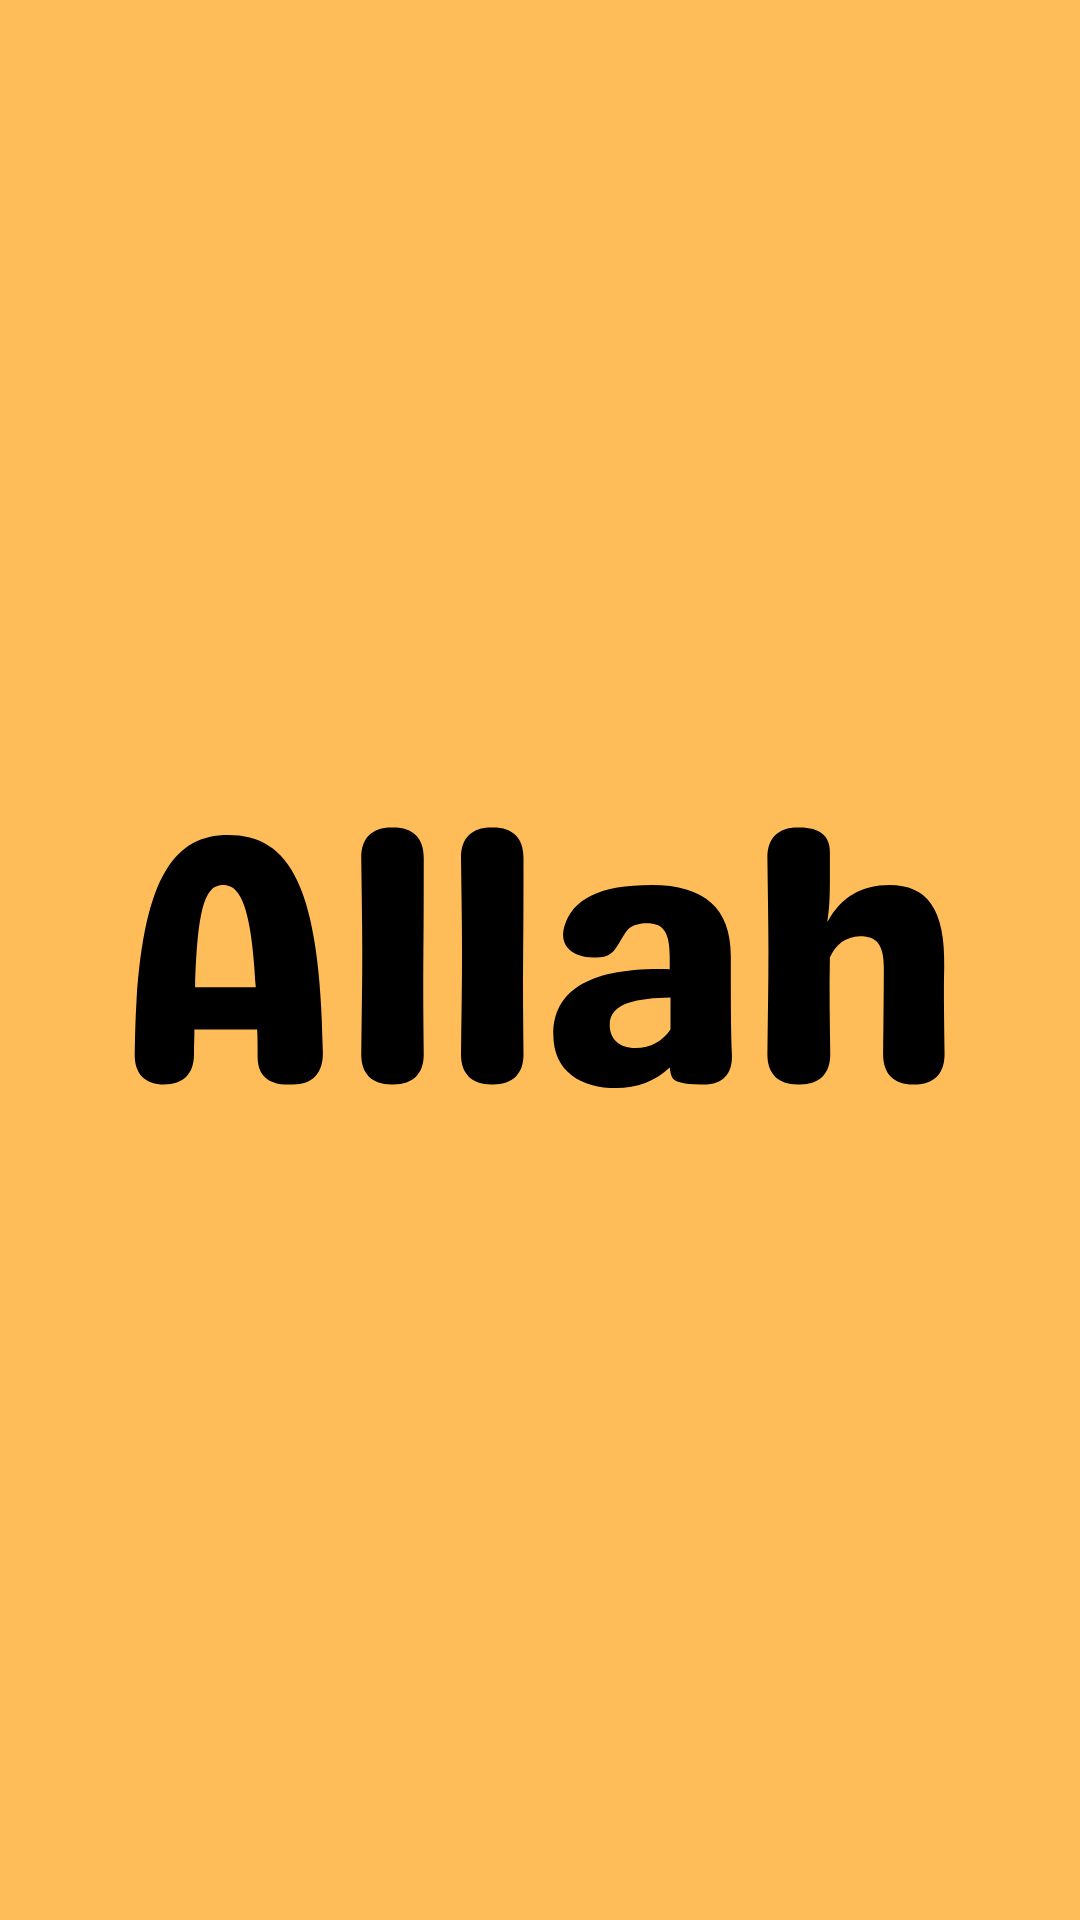 Allah Name Wallpaper in English